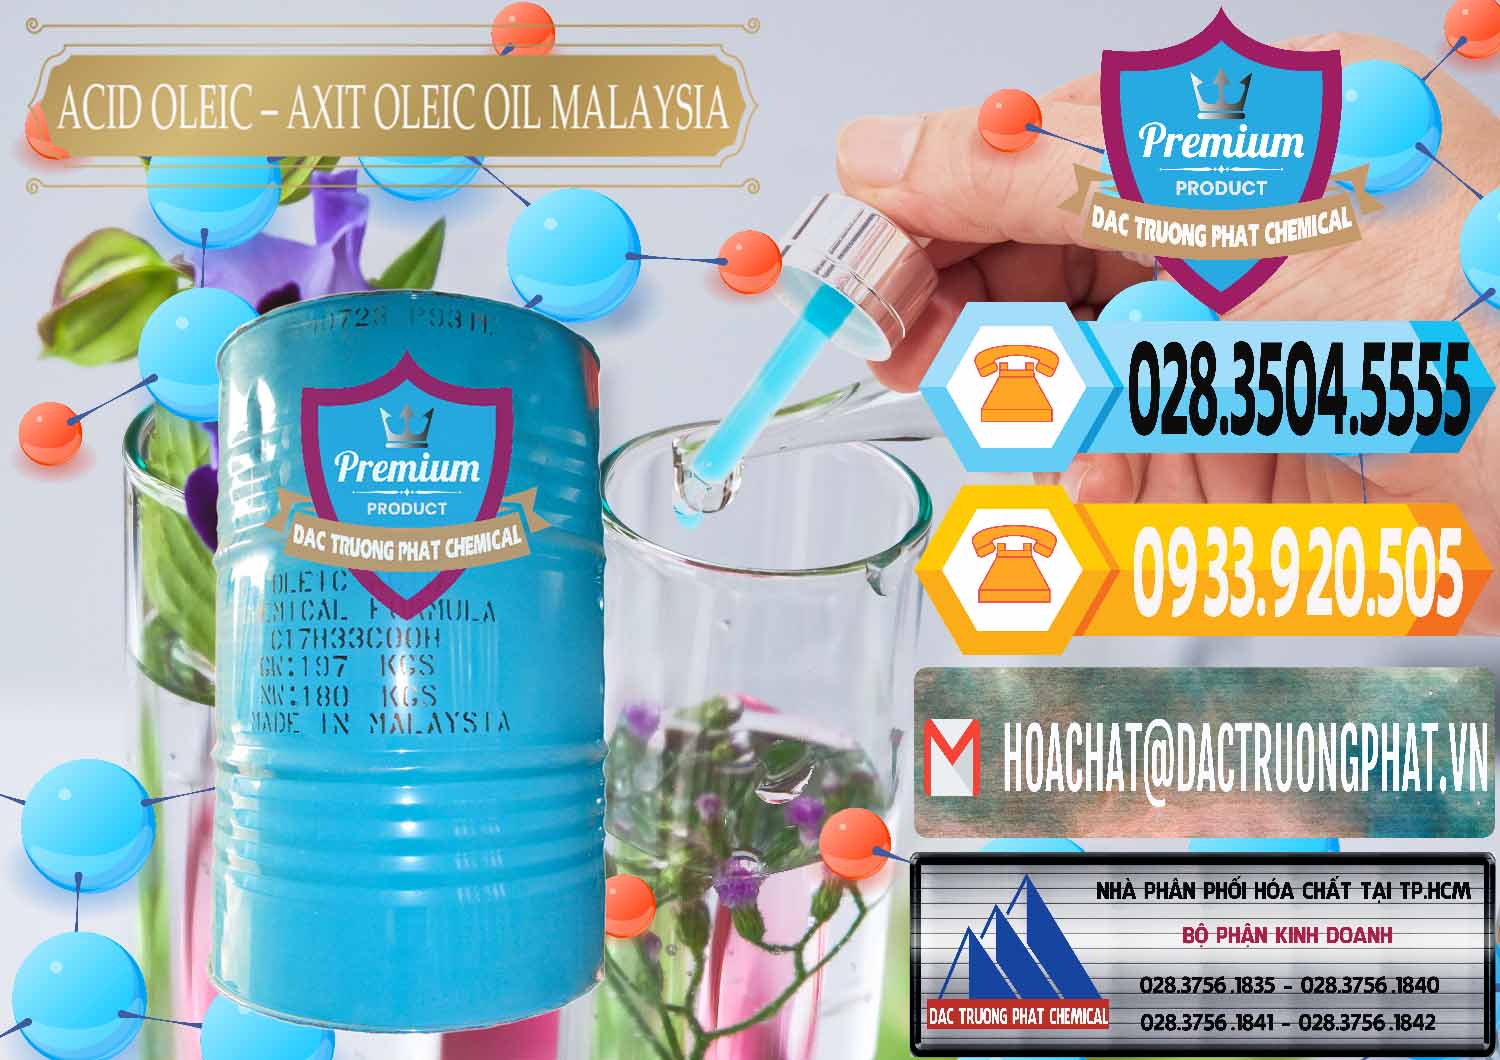 Công ty chuyên cung cấp ( bán ) Acid Oleic – Axit Oleic Oil Malaysia - 0013 - Nhà phân phối - nhập khẩu hóa chất tại TP.HCM - hoachattayrua.net